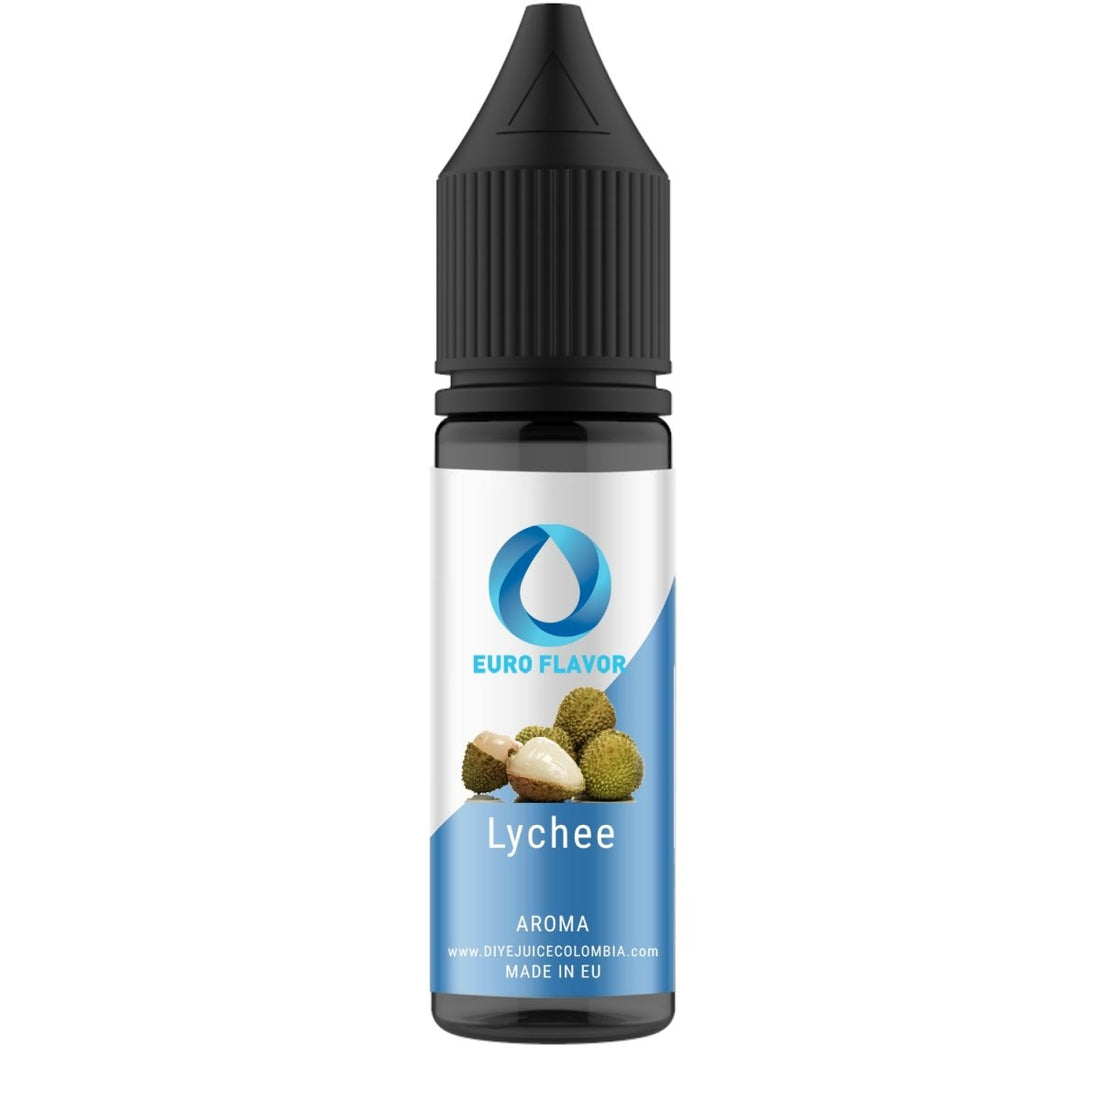 Lychee EF - Aroma - Euro Flavor | AR-EF-LYC